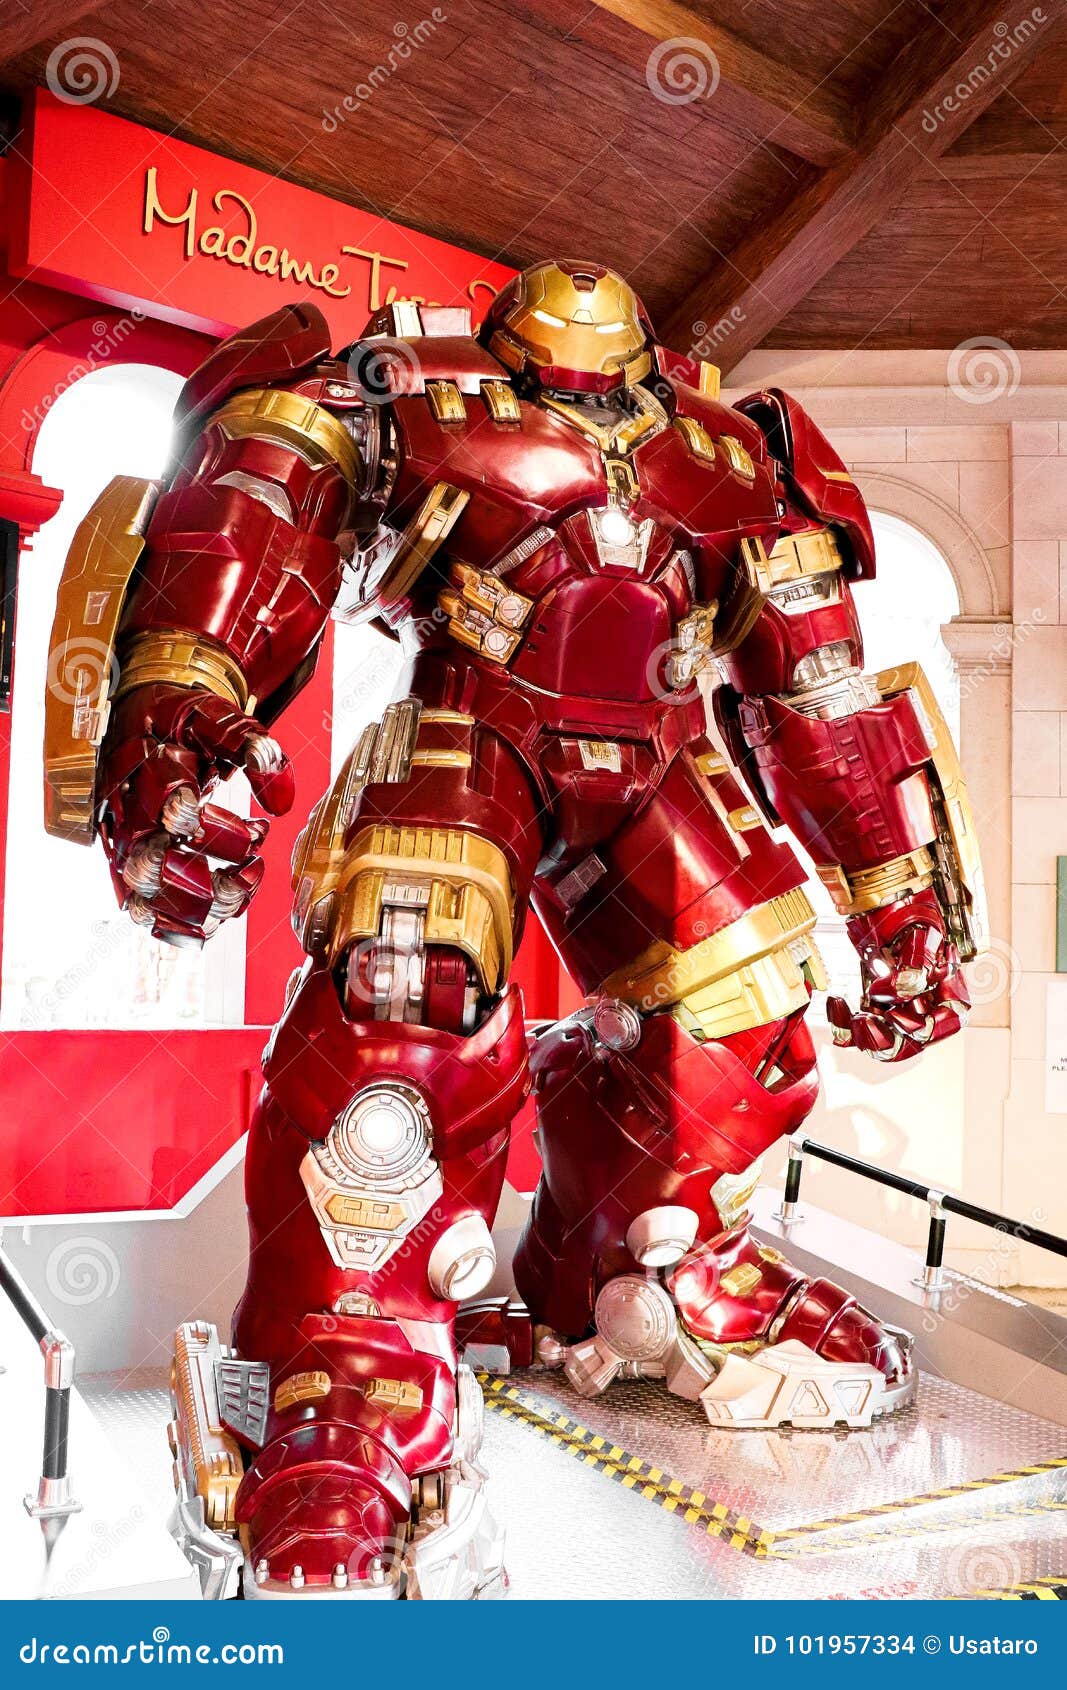 Avengers: Endgame: Thanos Wears Iron Man's Hulkbuster Armor In New Fan Art